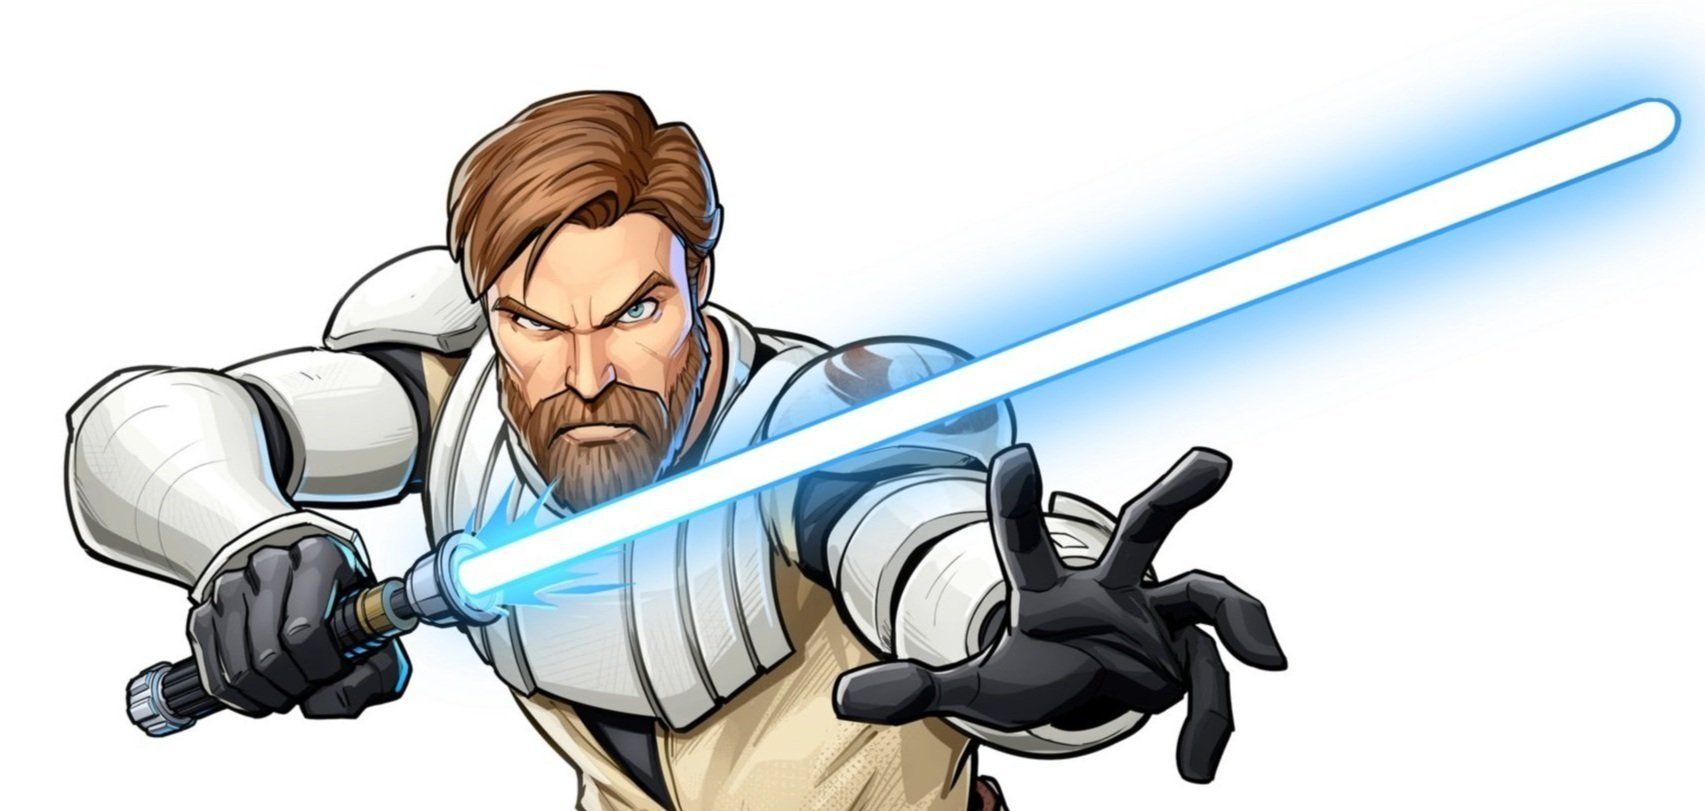 General Obi-Wan Kenobi - Unit Guide